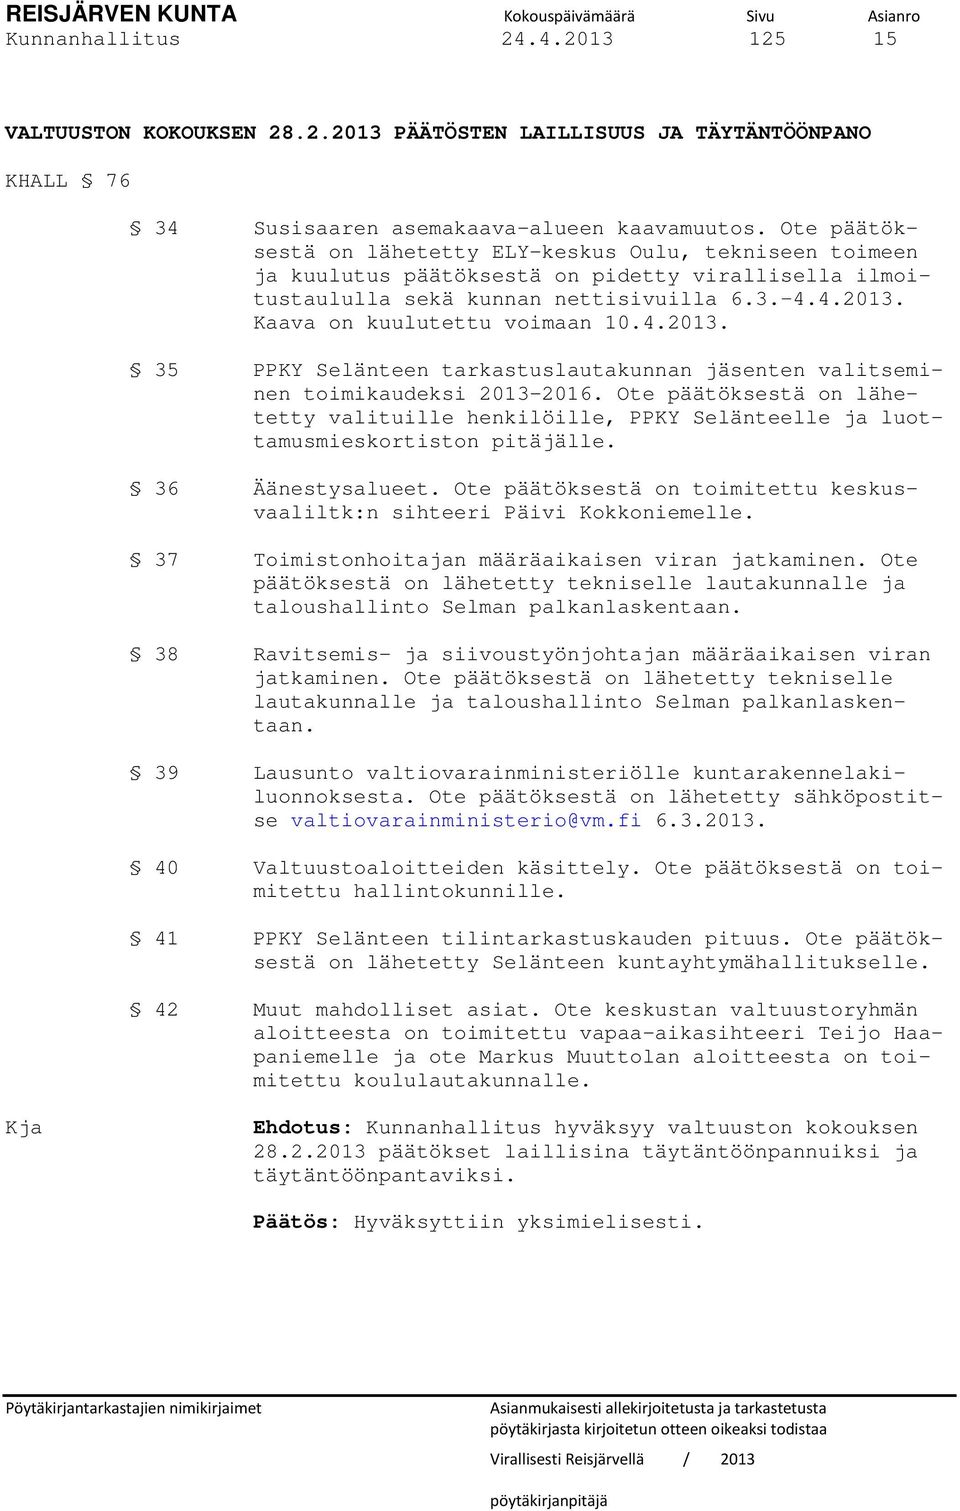 Kaava on kuulutettu voimaan 10.4.2013. 35 PPKY Selänteen tarkastuslautakunnan jäsenten valitseminen toimikaudeksi 2013-2016.